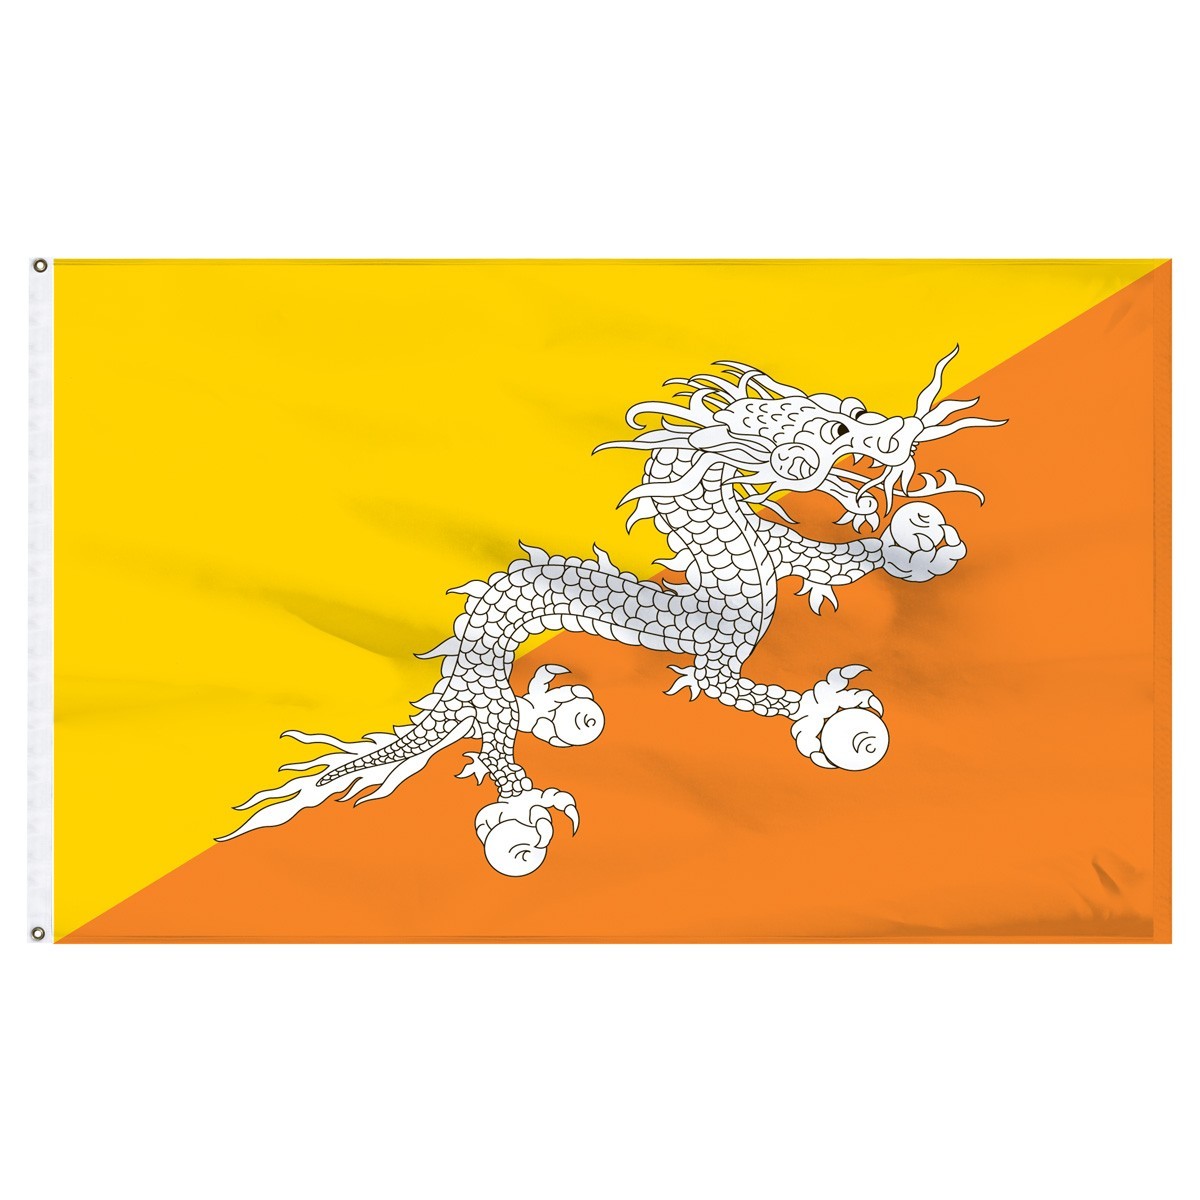 Shop Bhutan flags for sale